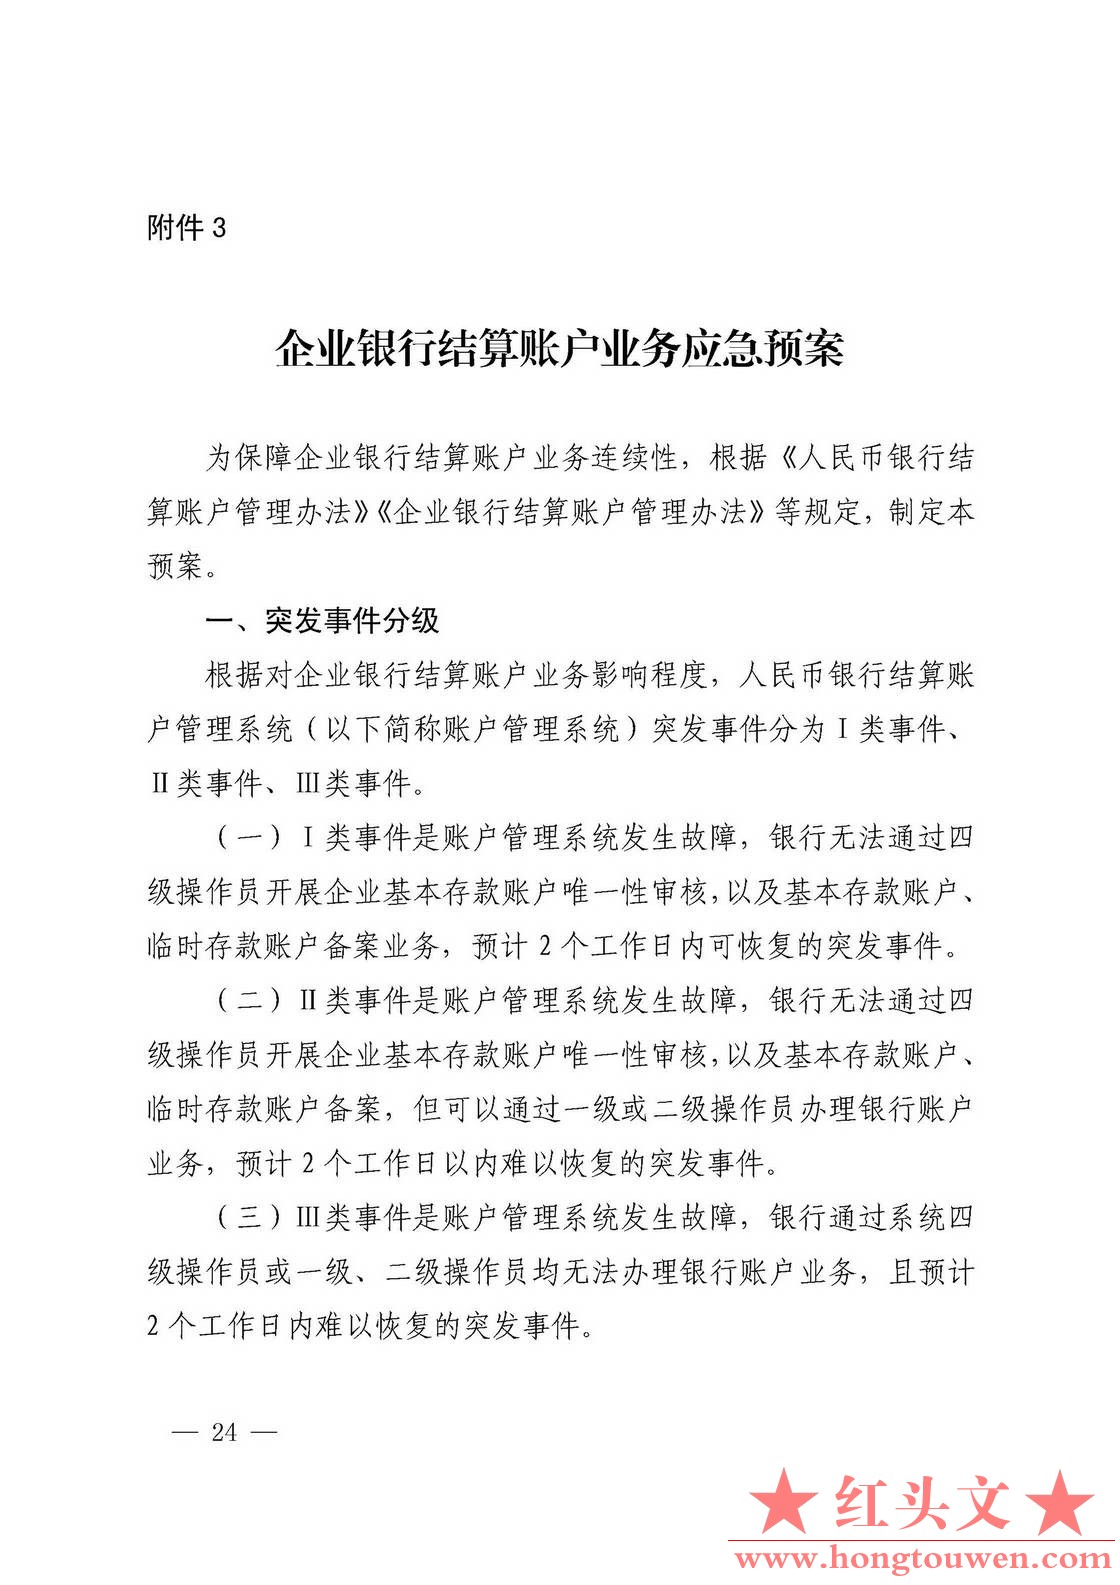 银发[2019]41号-中国人民银行关于取消企业银行账户许可的通知_页面_24.jpg.jpg